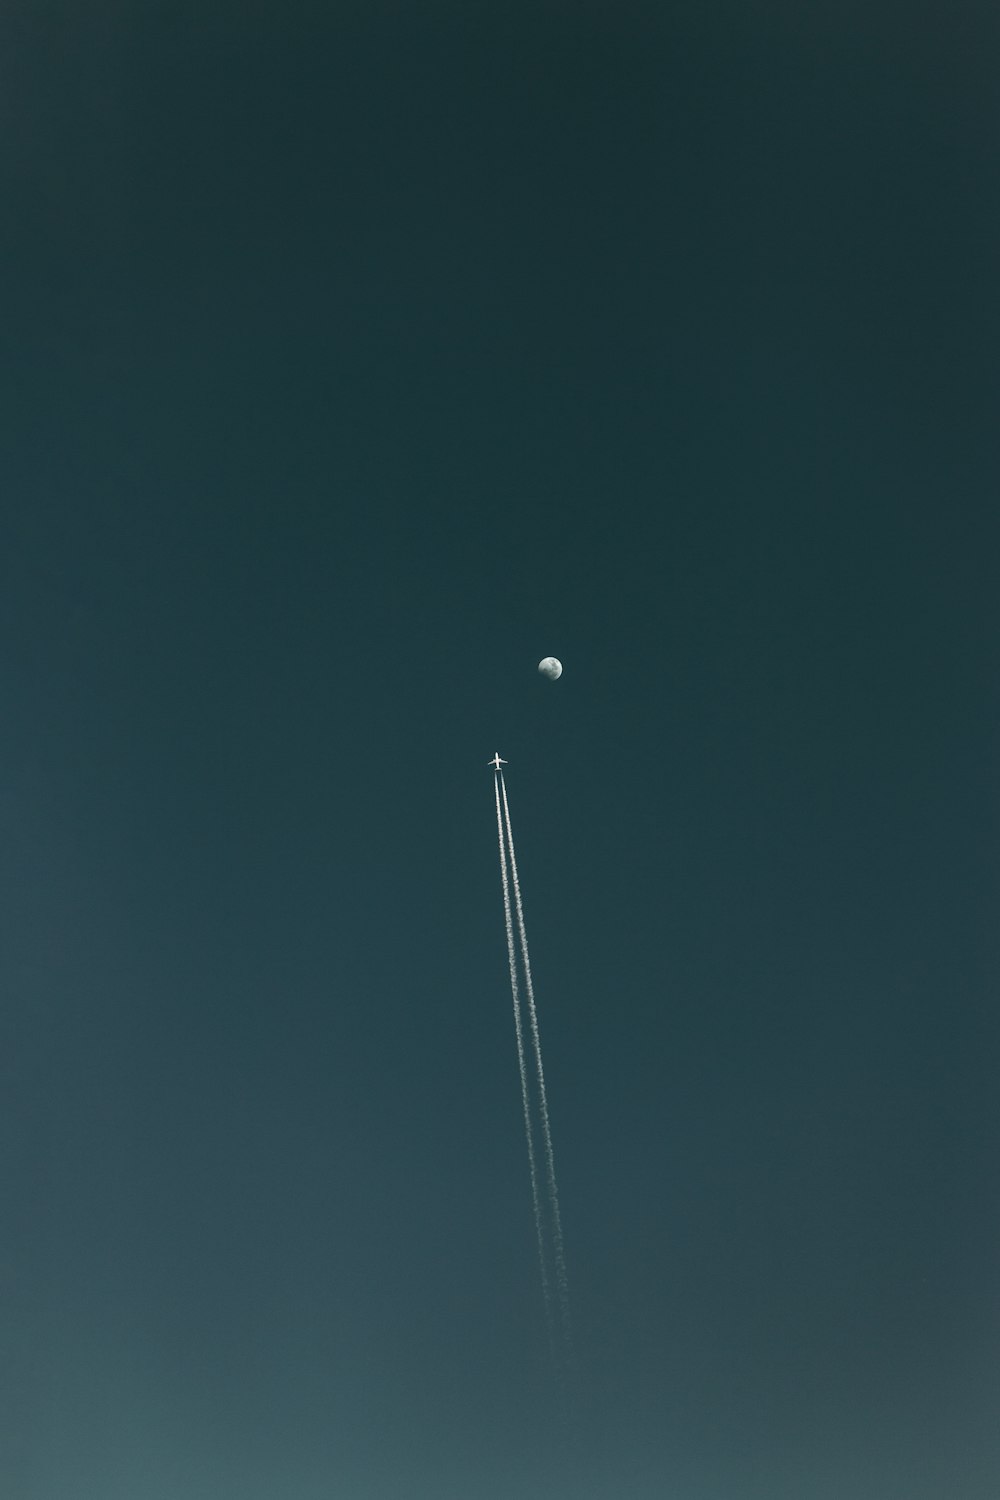 夜間に飛行機雲を乗せて飛行機を飛ばす